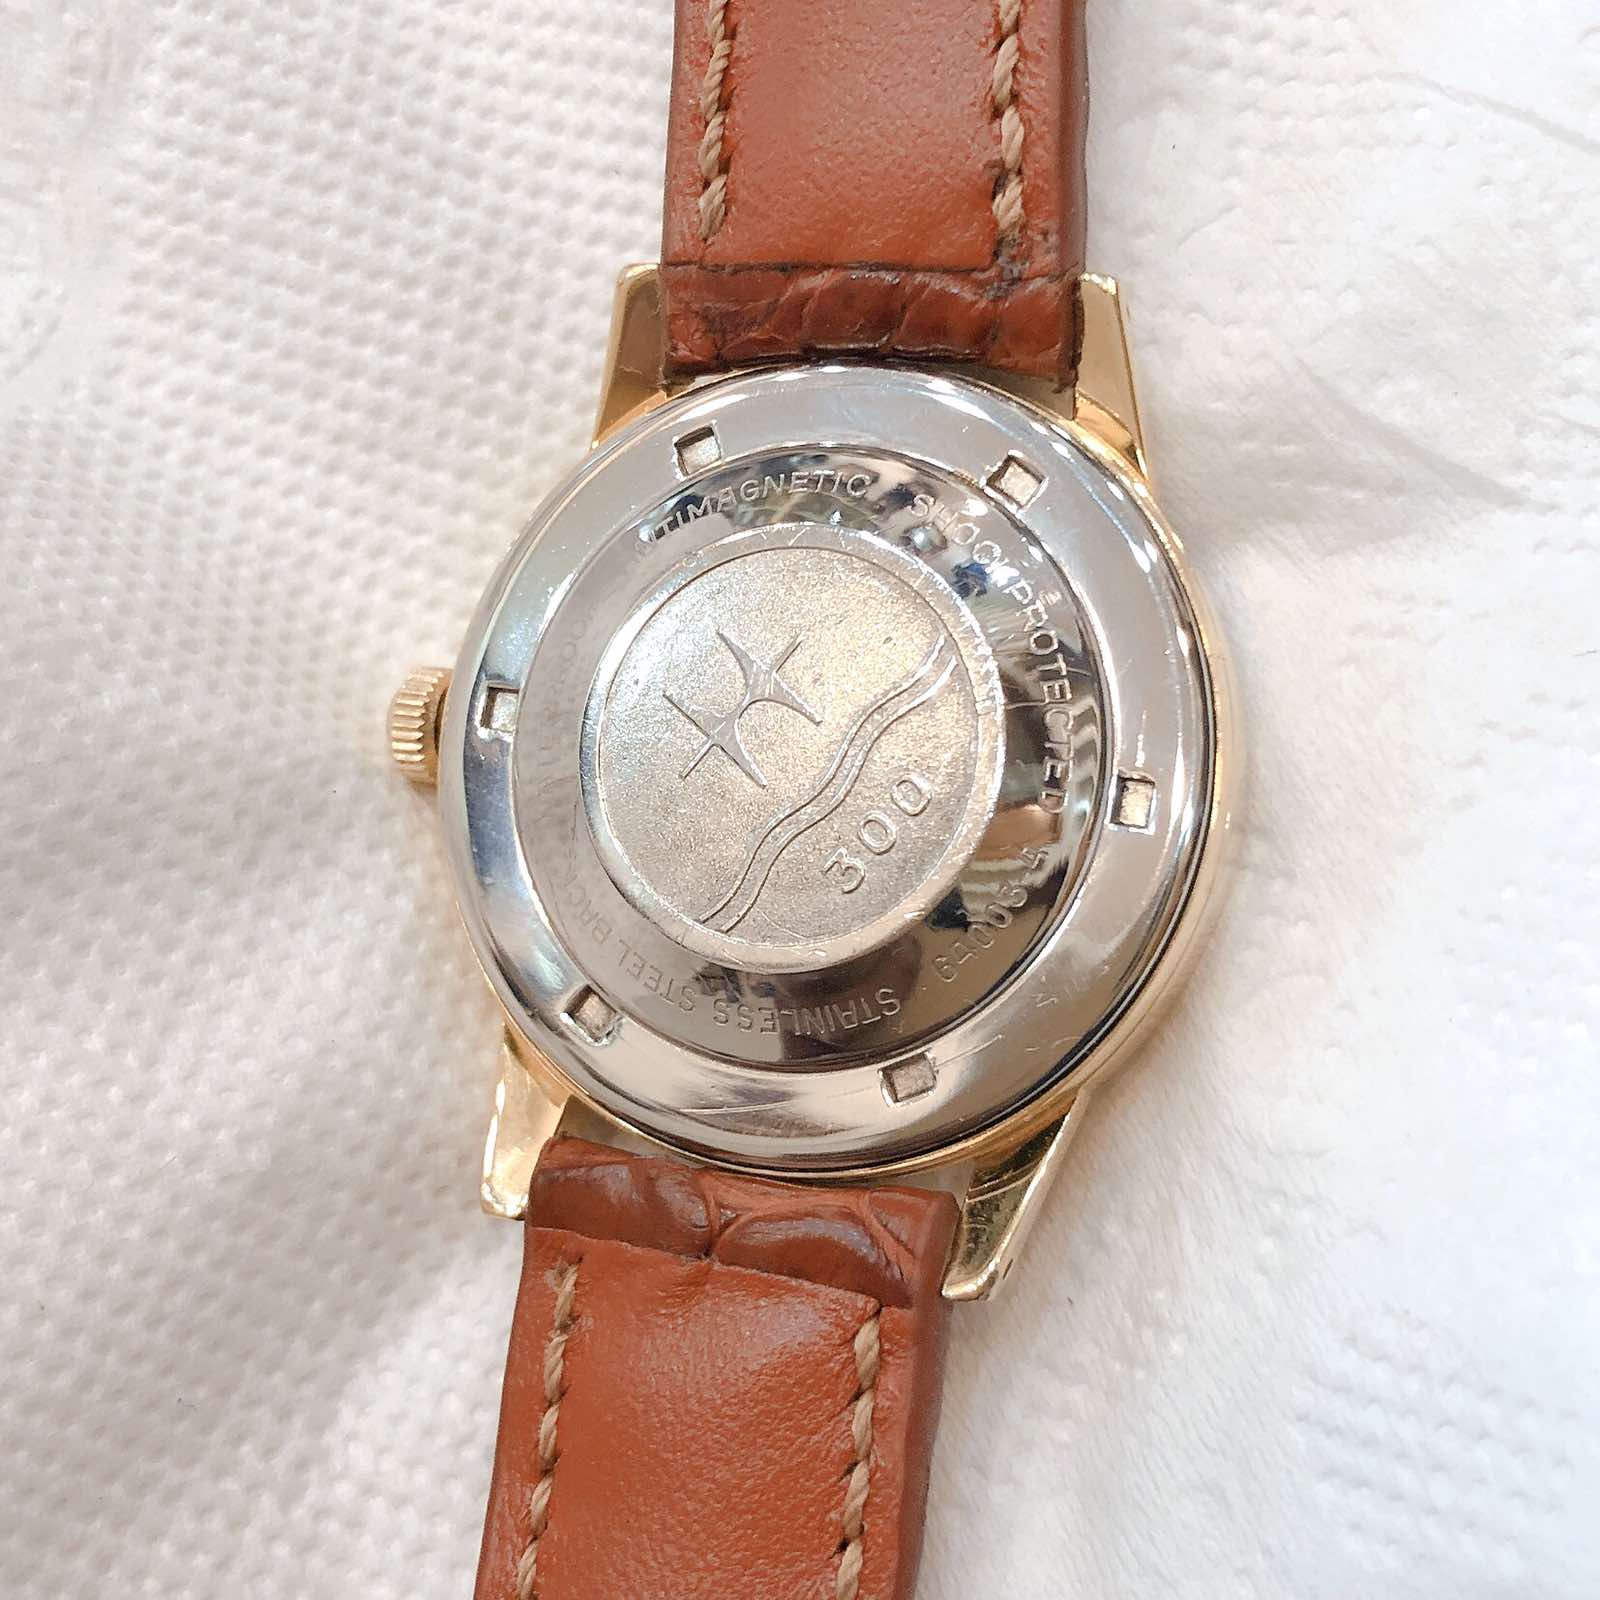 Đồng hồ cổ Hamilton Estorel Automatic lacke vàng chính hãng thuỵ sỹ 